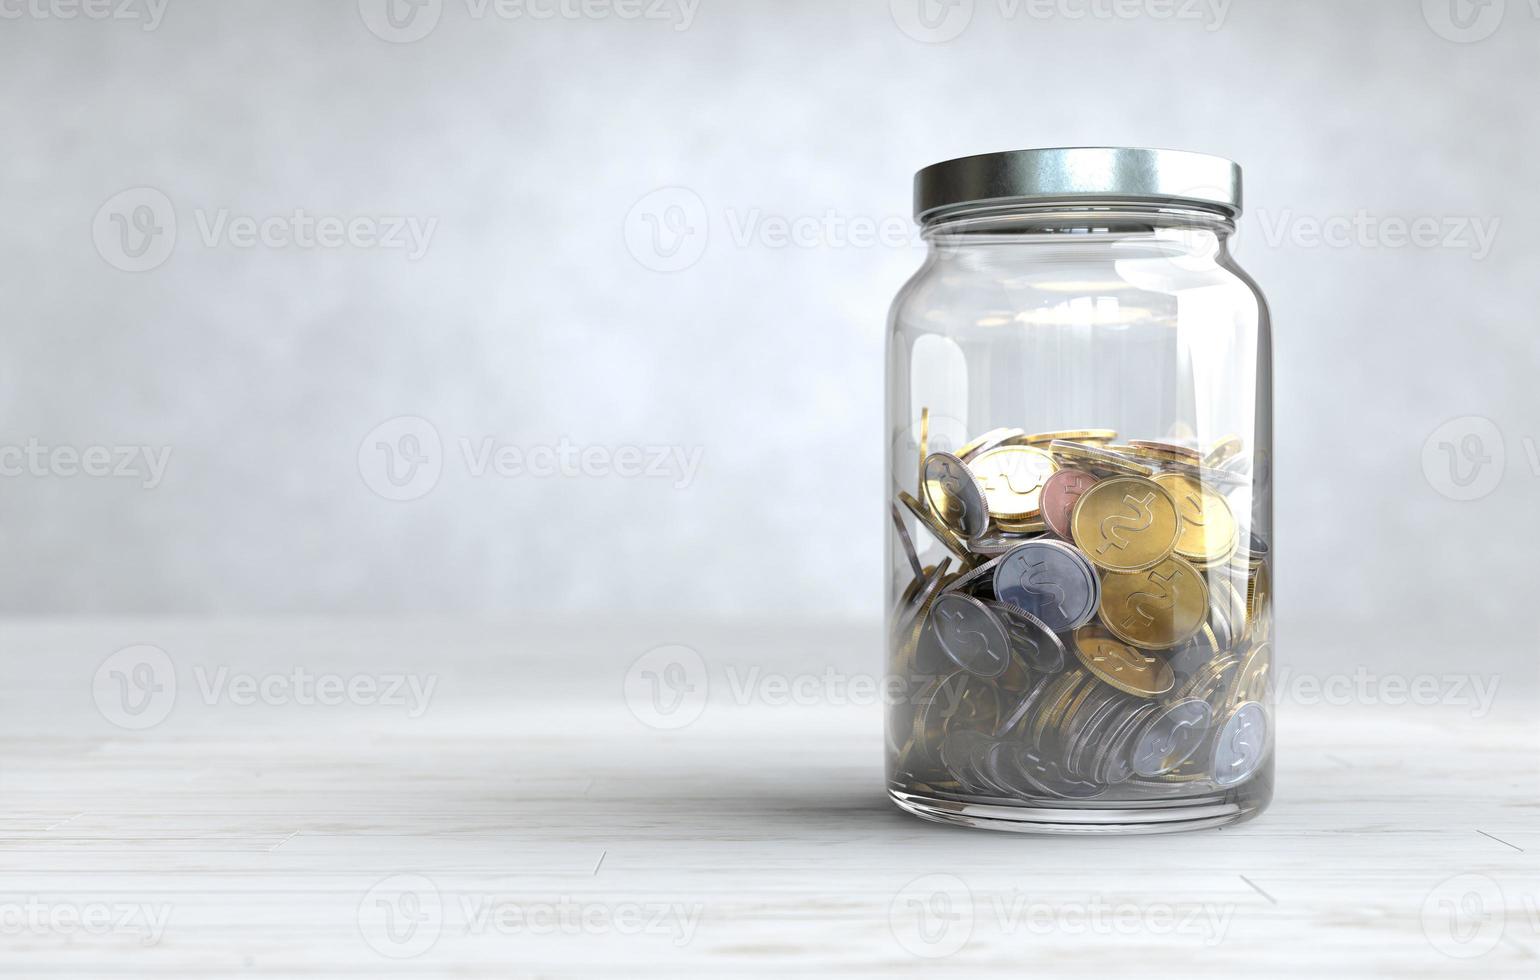 moedas em uma jarra de vidro, conceito de economia de dinheiro. foto